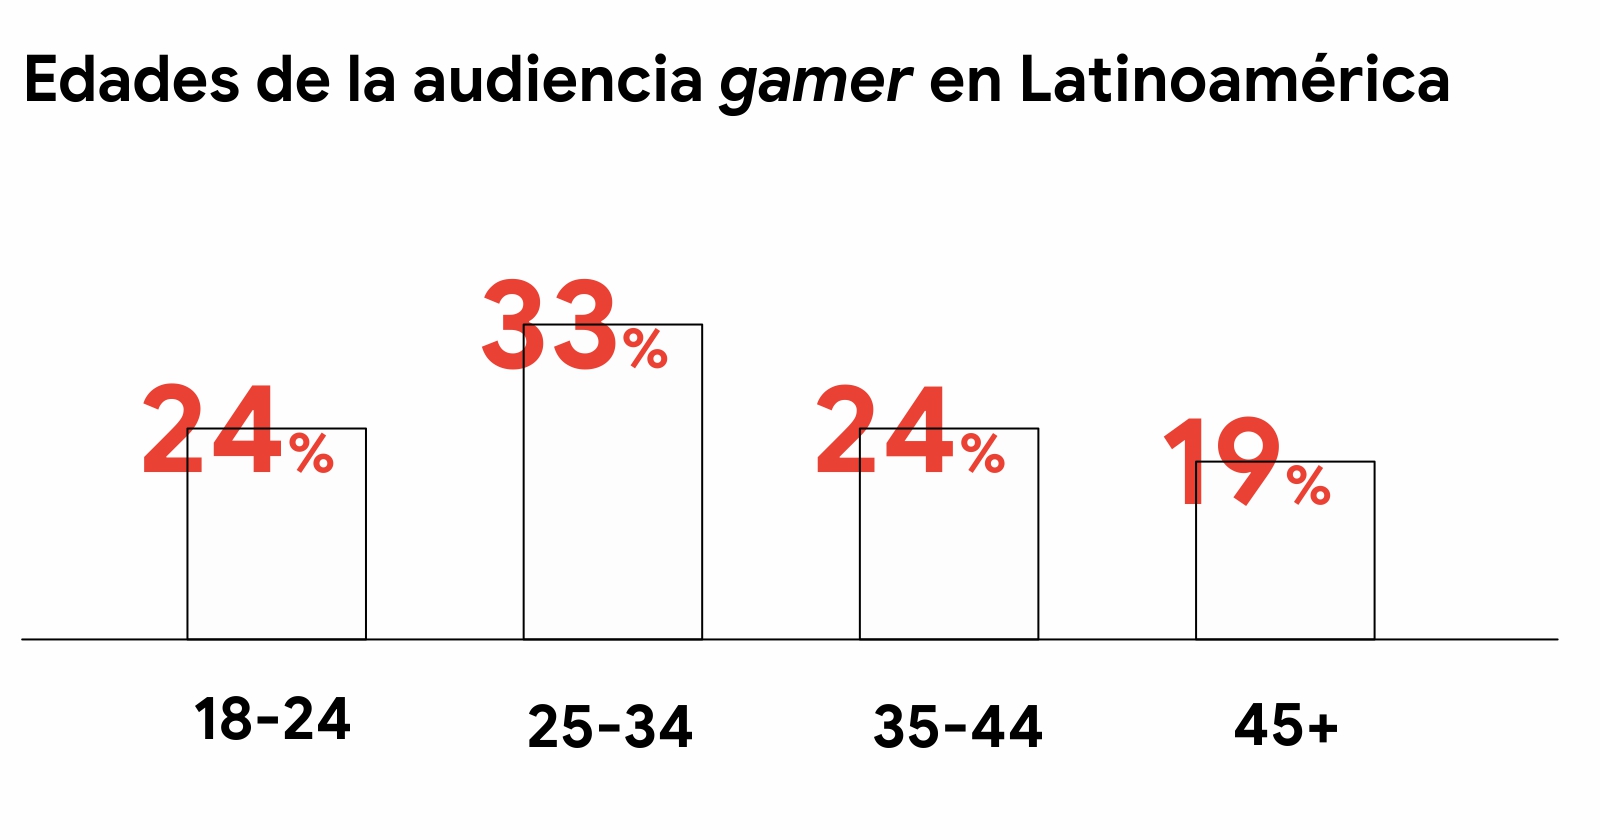 Un gráfico de barras muestra las edades de la audiencia gamer en Latinoamérica: el 24% tiene de 18 a 24 años, el 33% de 25 a 34, el 24% de 35 a 44 y el 19% más de 45 años.